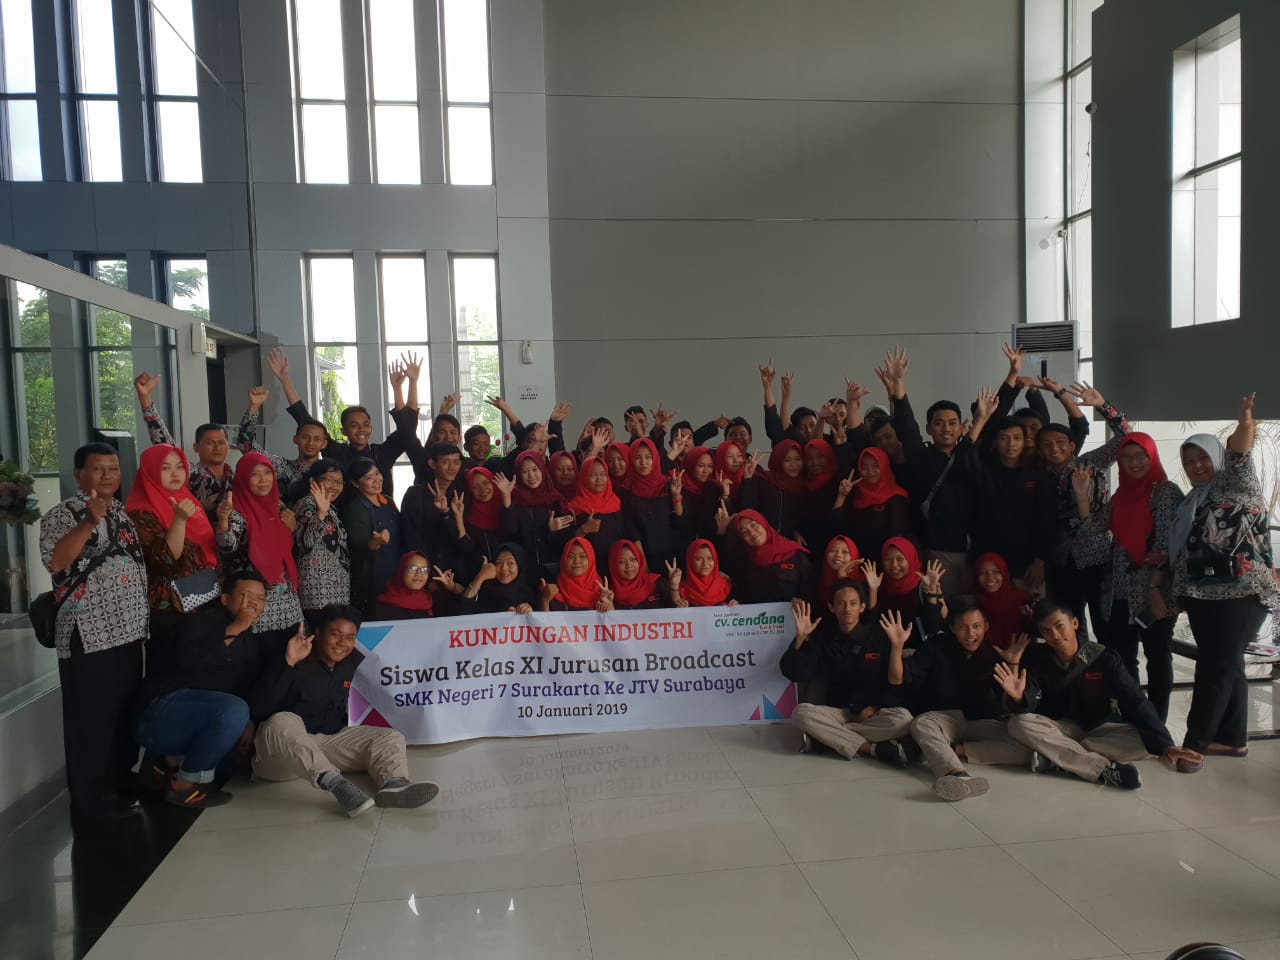 Kunjungan Industri Jurusan Broadcasting ke Surabaya 2019